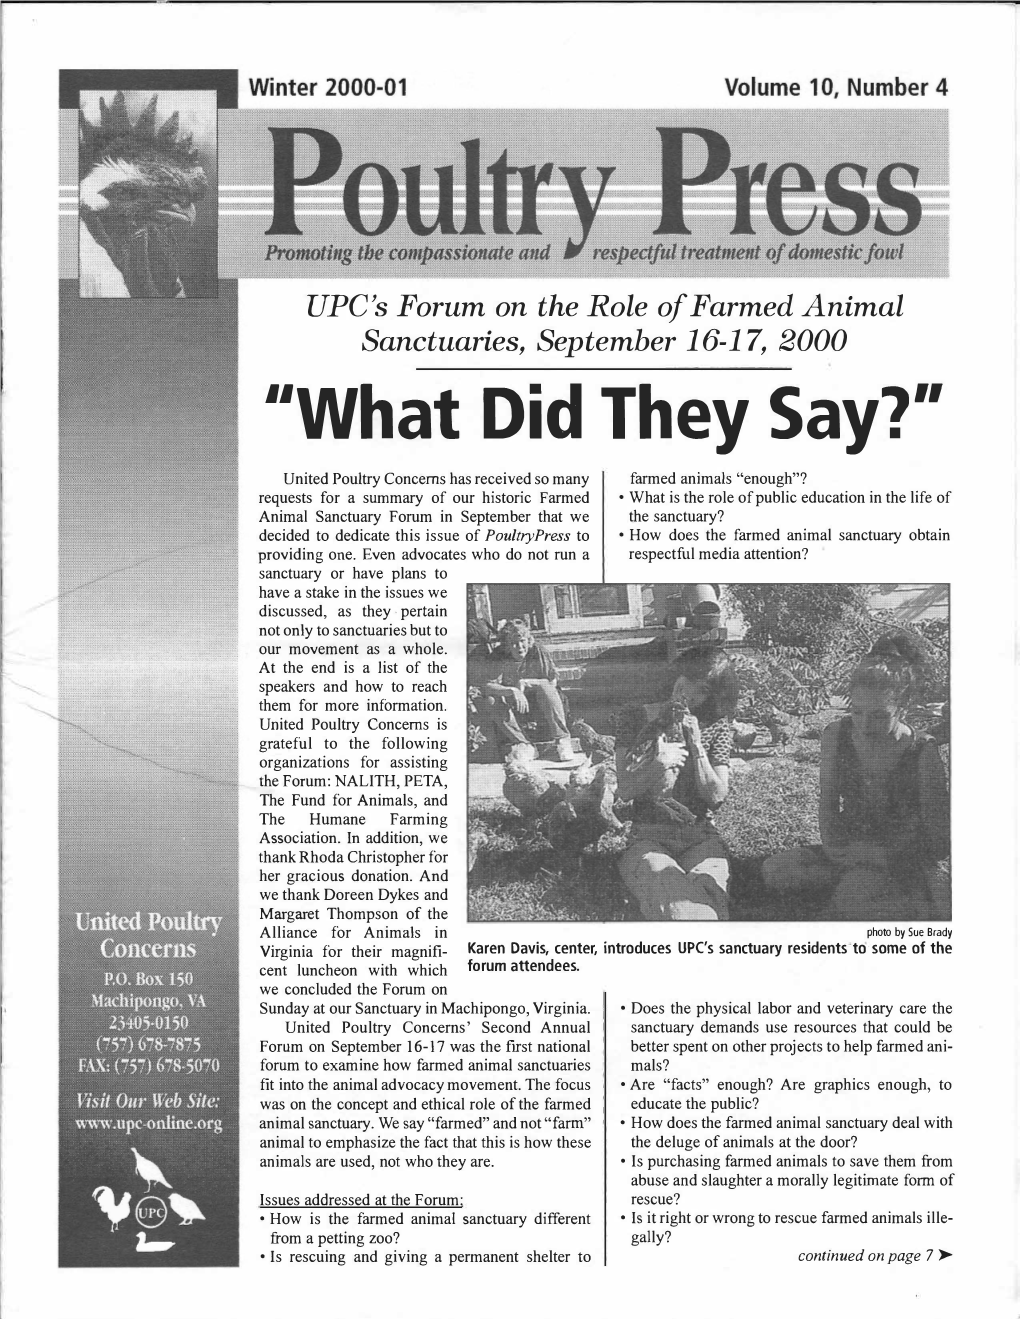 UPC Winter 2000-2001 Poultry Press